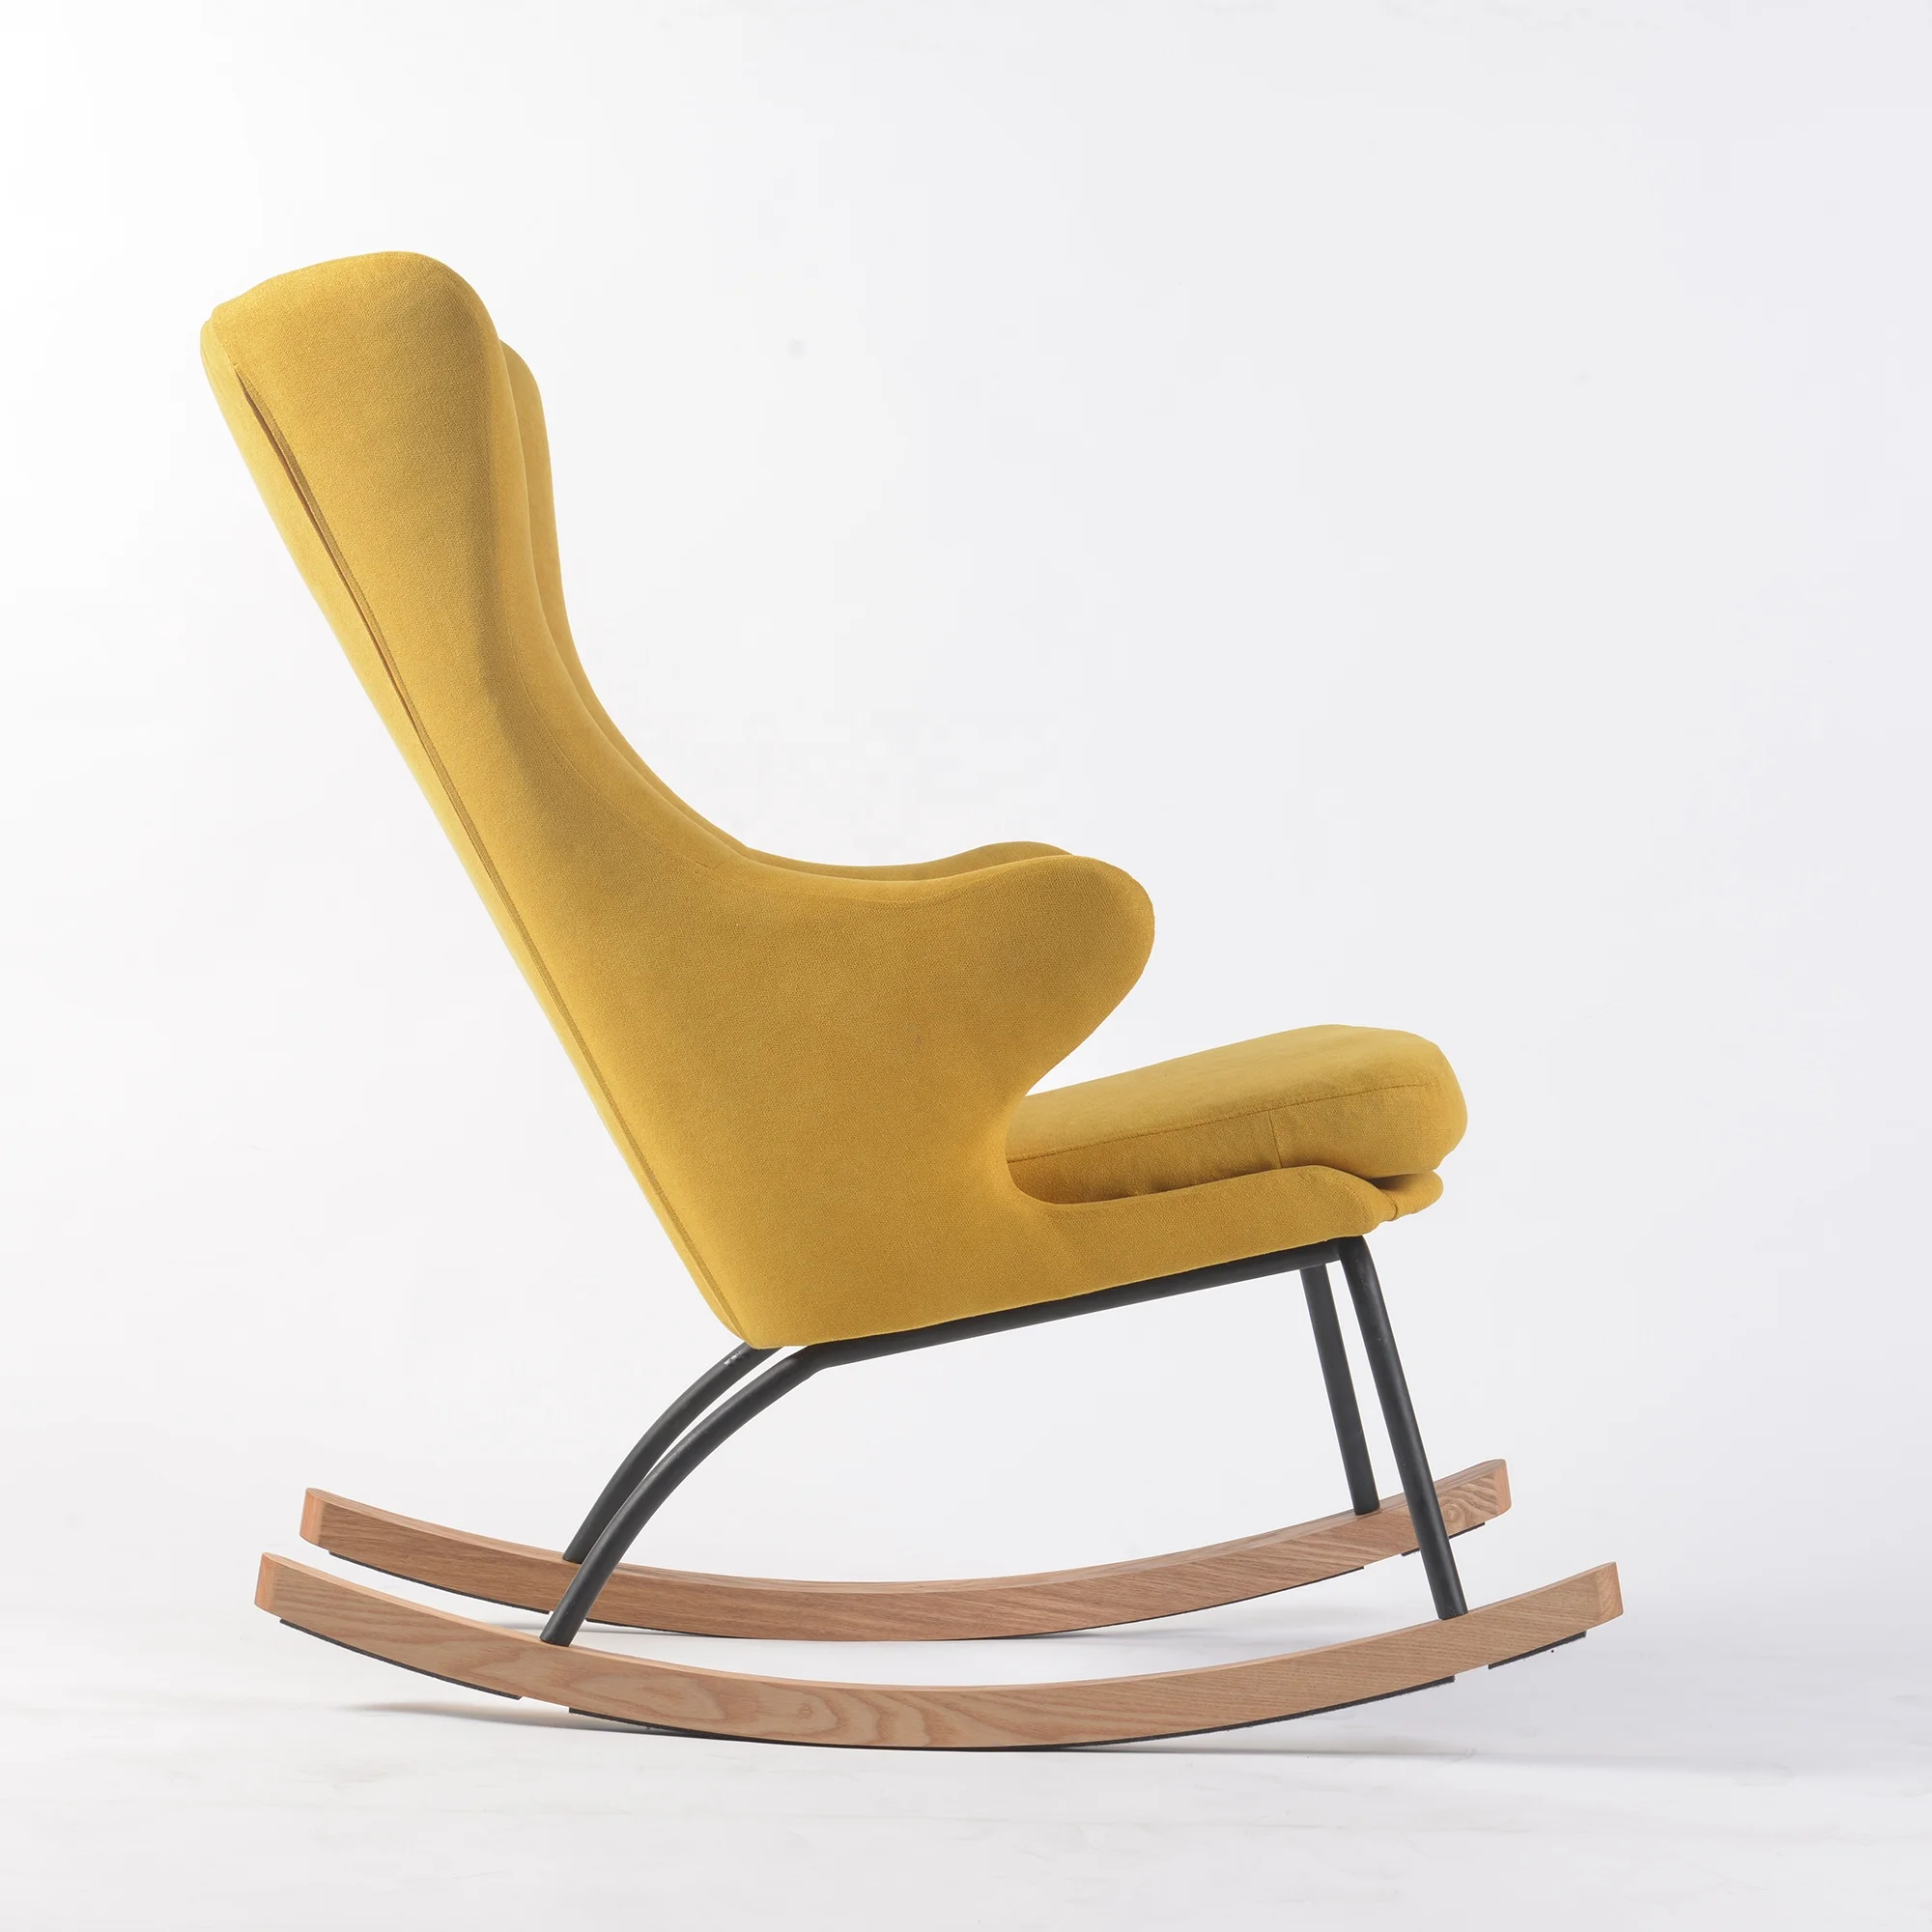 padded glider rocker chair